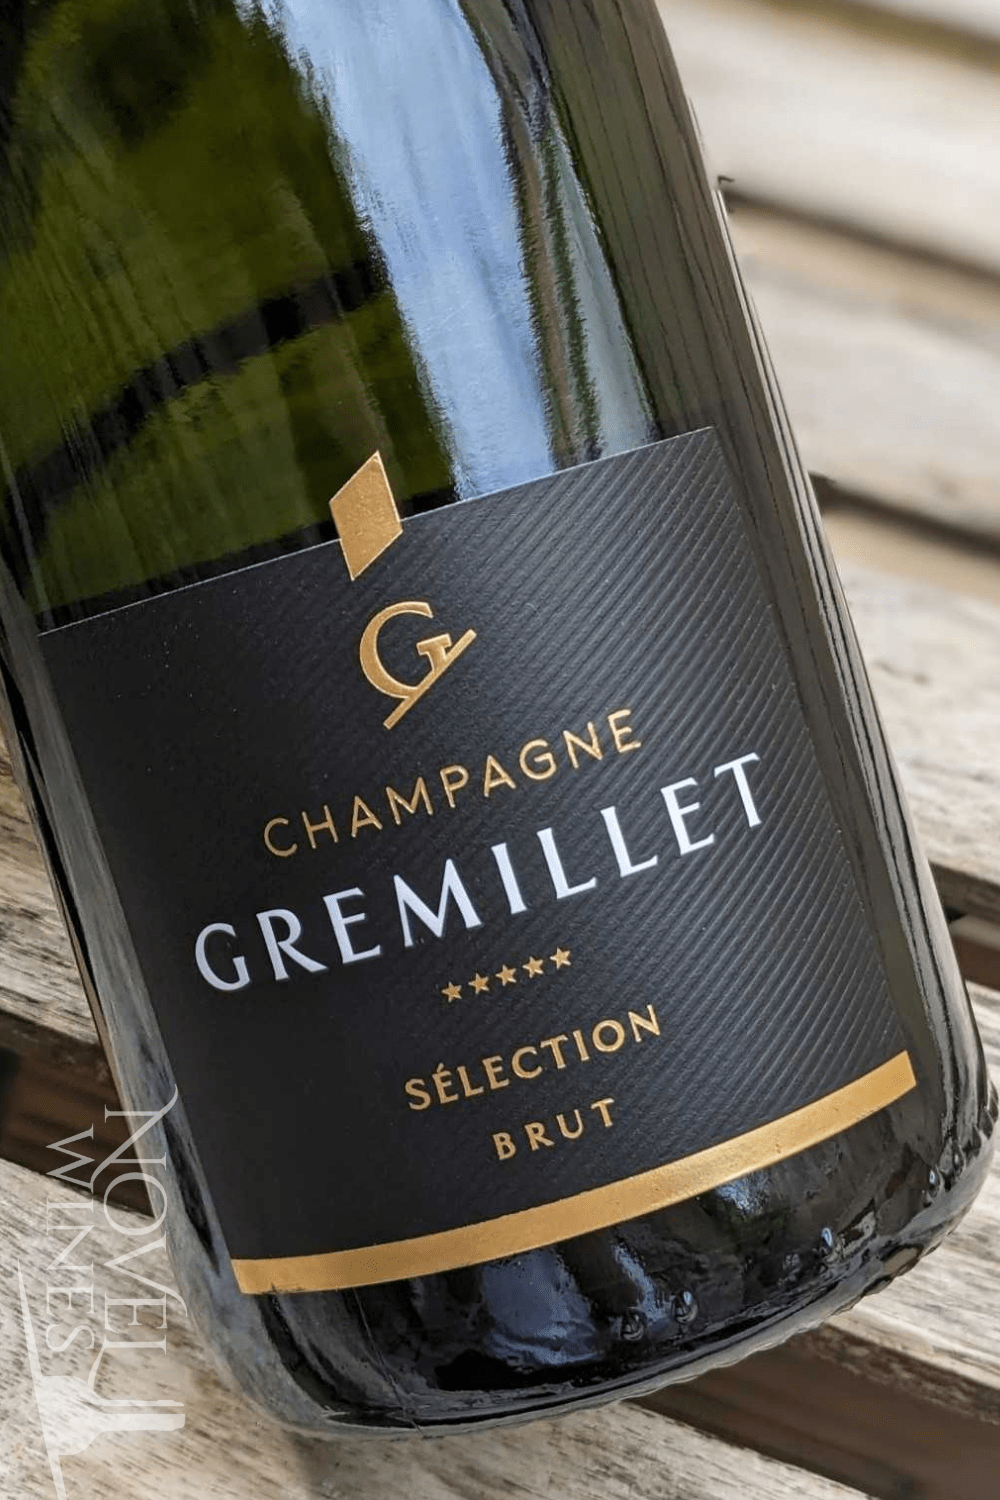 Novel Wines Sparkling Wine Champagne Gremillet Brut NV, France